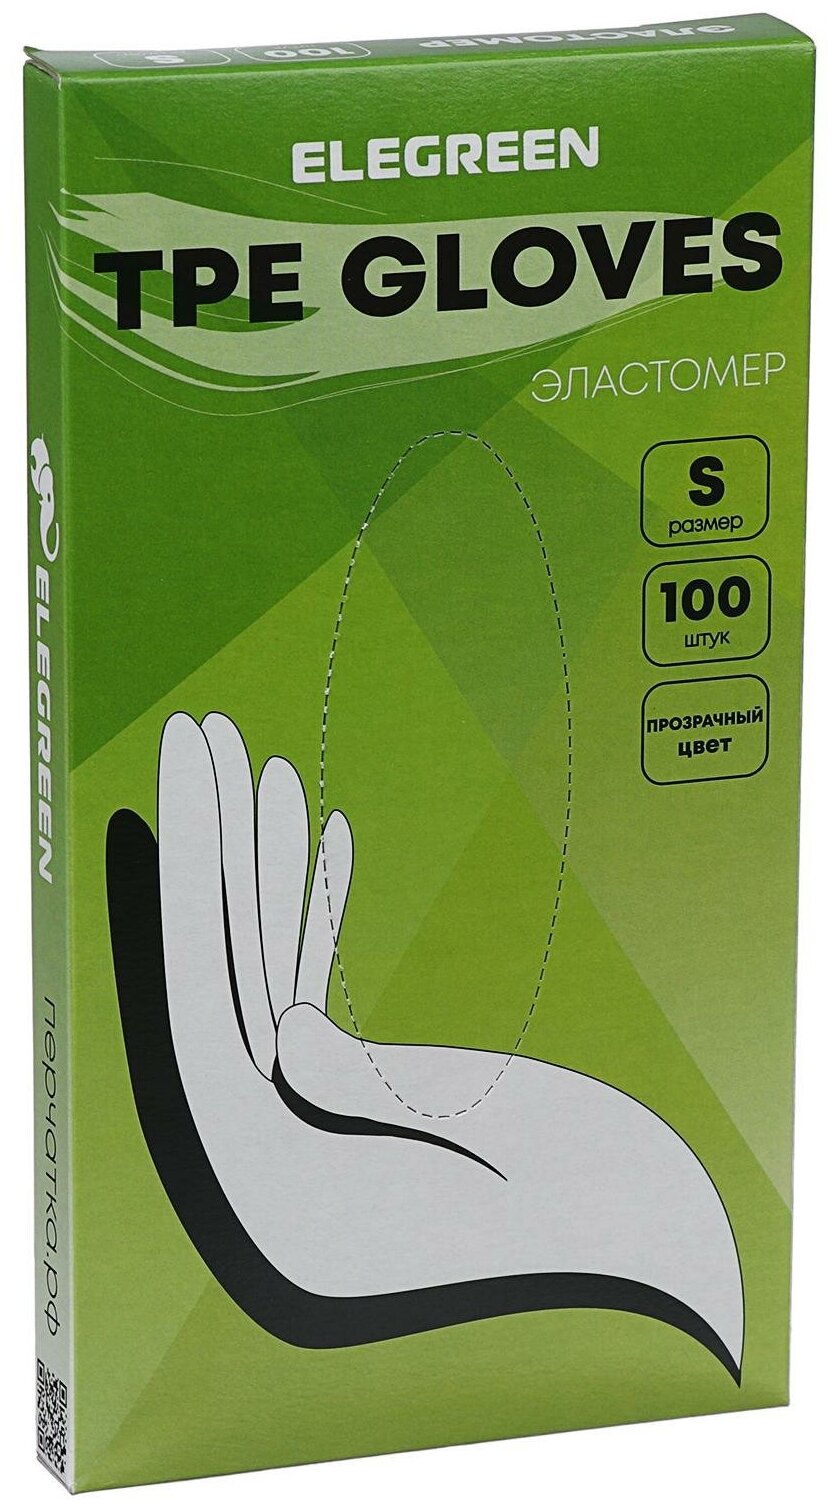 Перчатки ELEGREEN Elastomer одноразовые, Размер S, 100шт (50пар) - фотография № 1